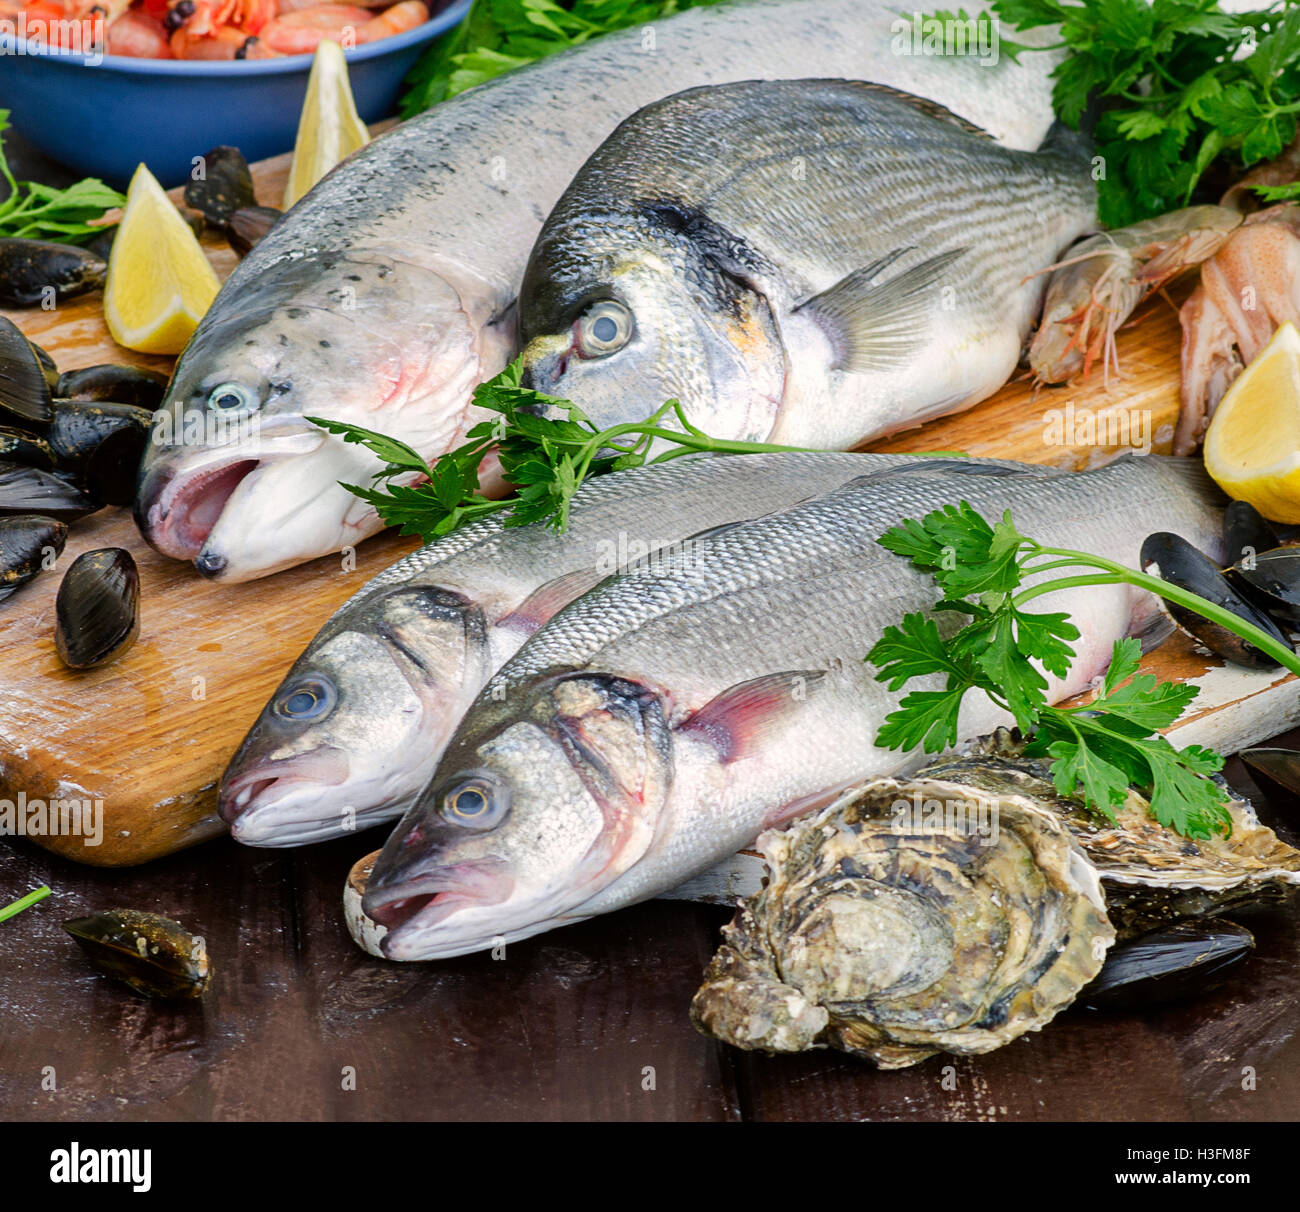 Rohe Meeresfrüchte auf einem Holzbrett. Gesunde Ernährung. Stockfoto